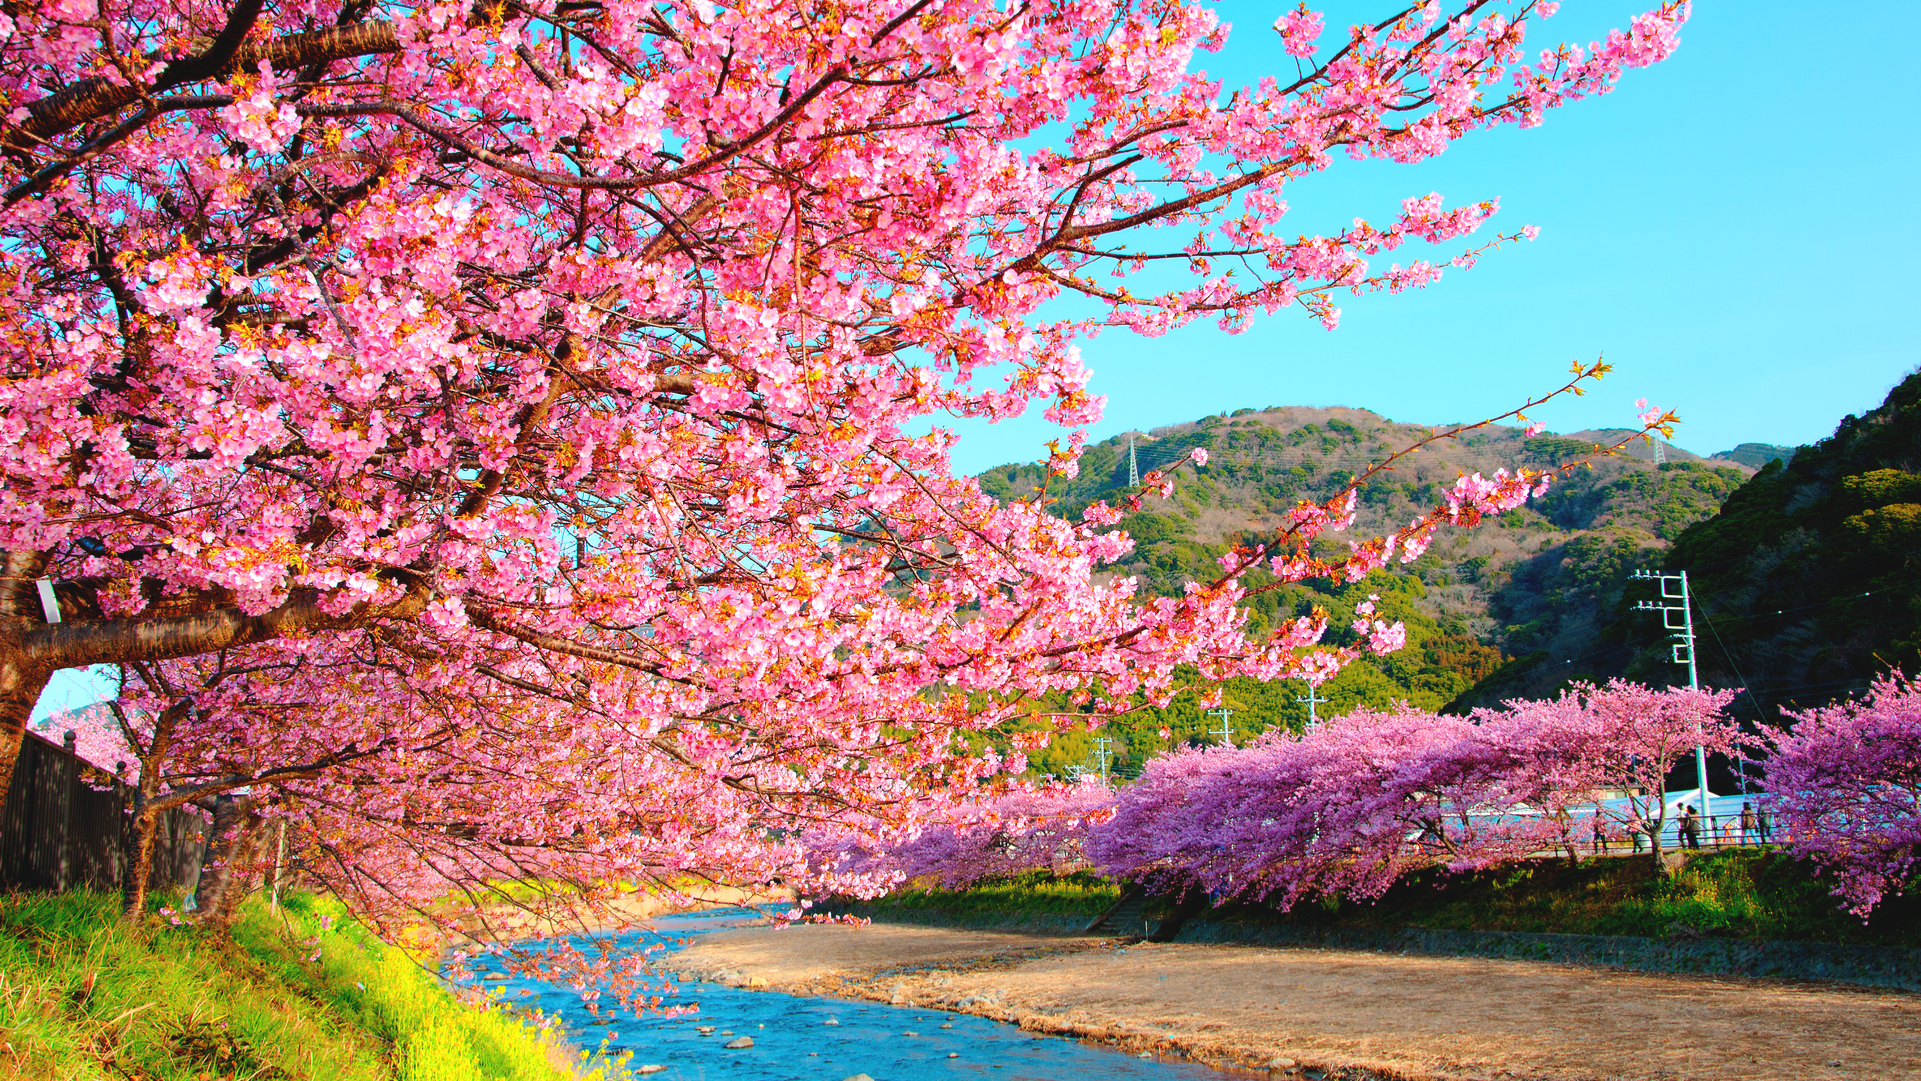 河津 桜 祭り 年 伊豆 河津桜まつり 開花状況 見頃は 見どころとアクセス情報も満載